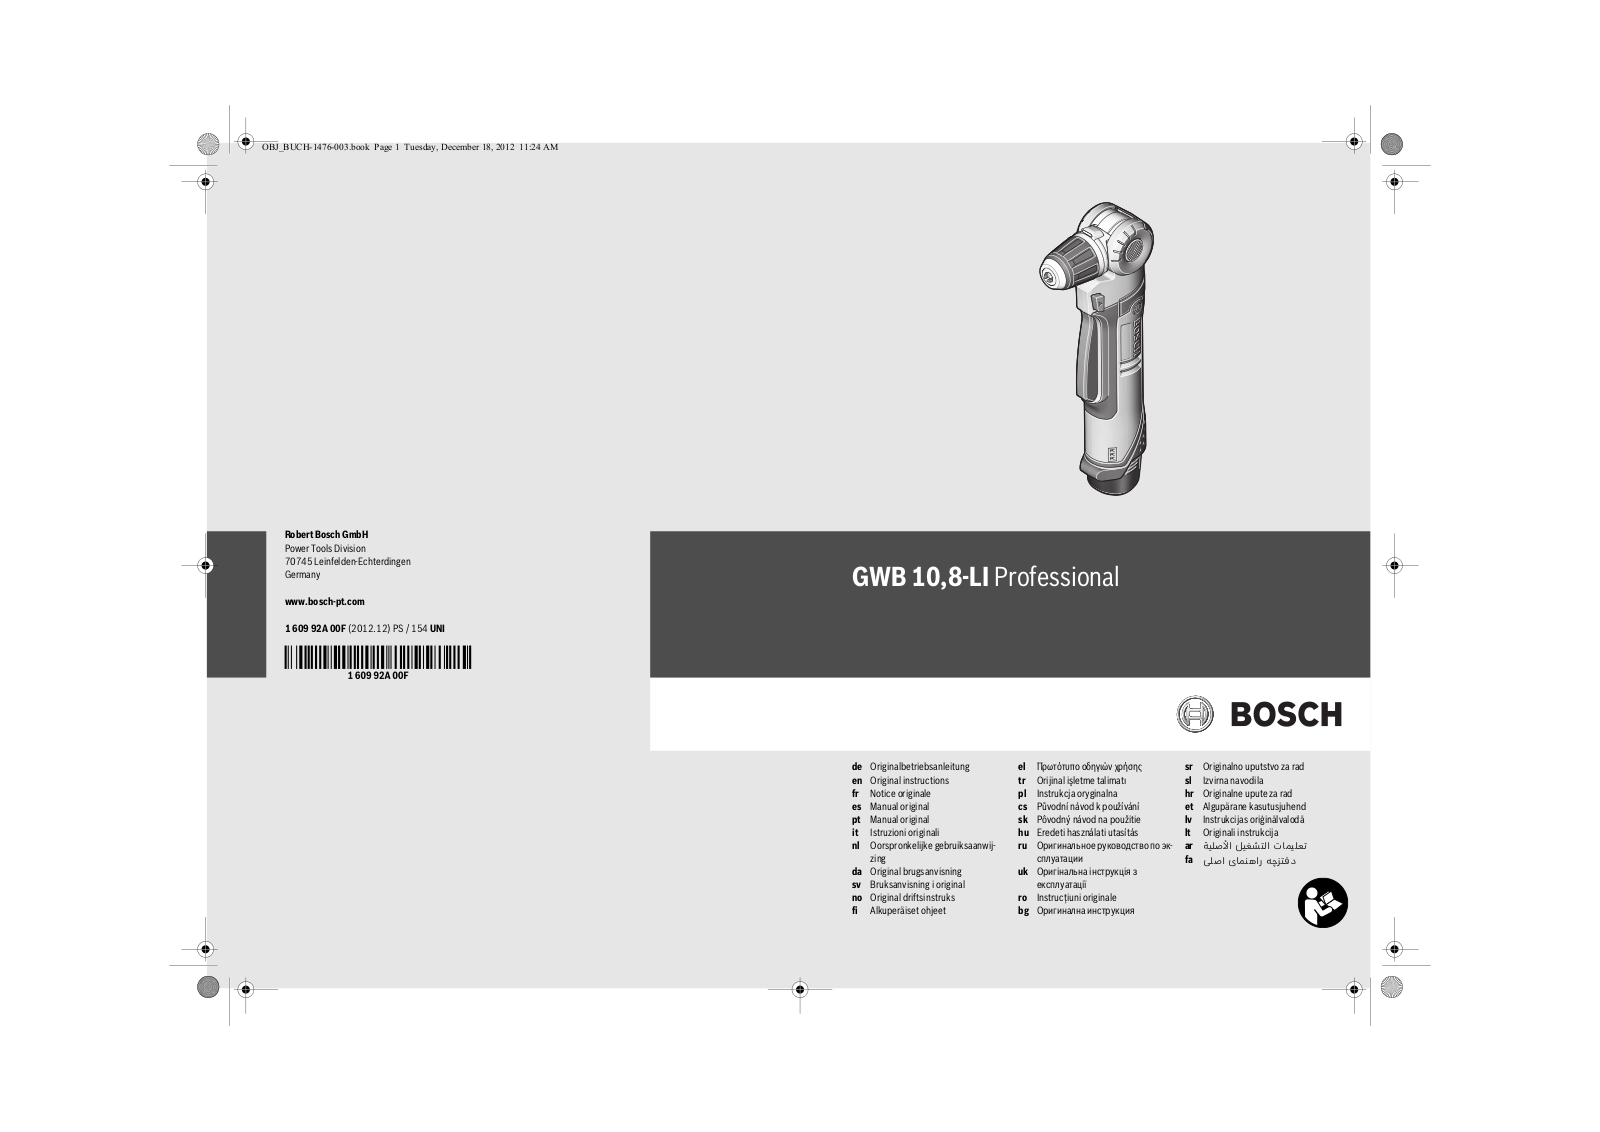 Bosch GWB 10, GWB 8-LI User Manual